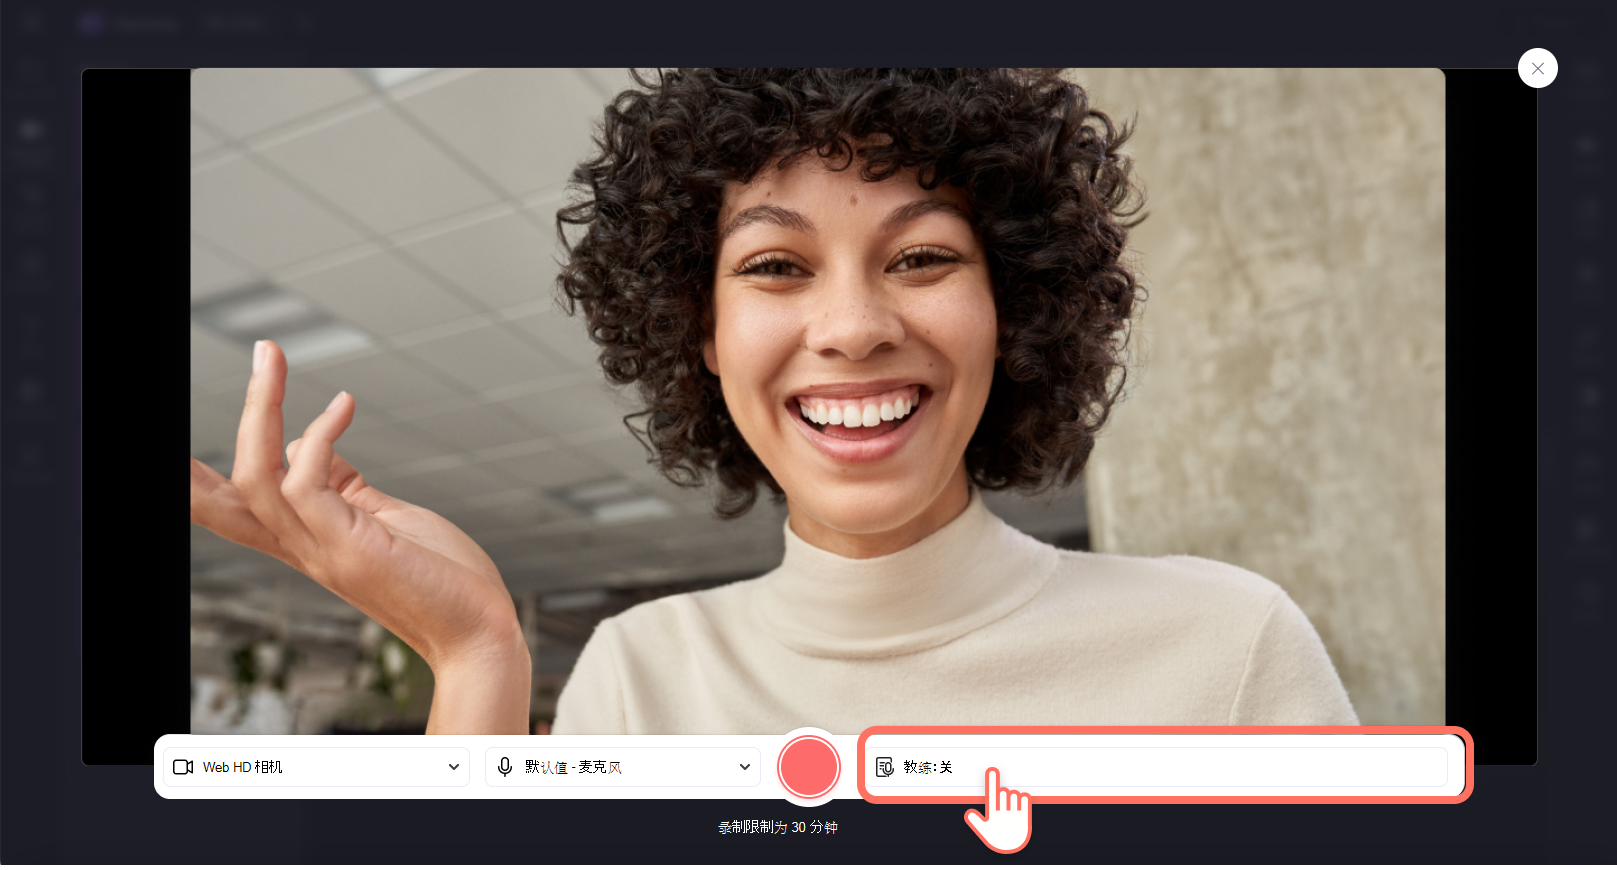 用户单击扬声器指导按钮的图像。